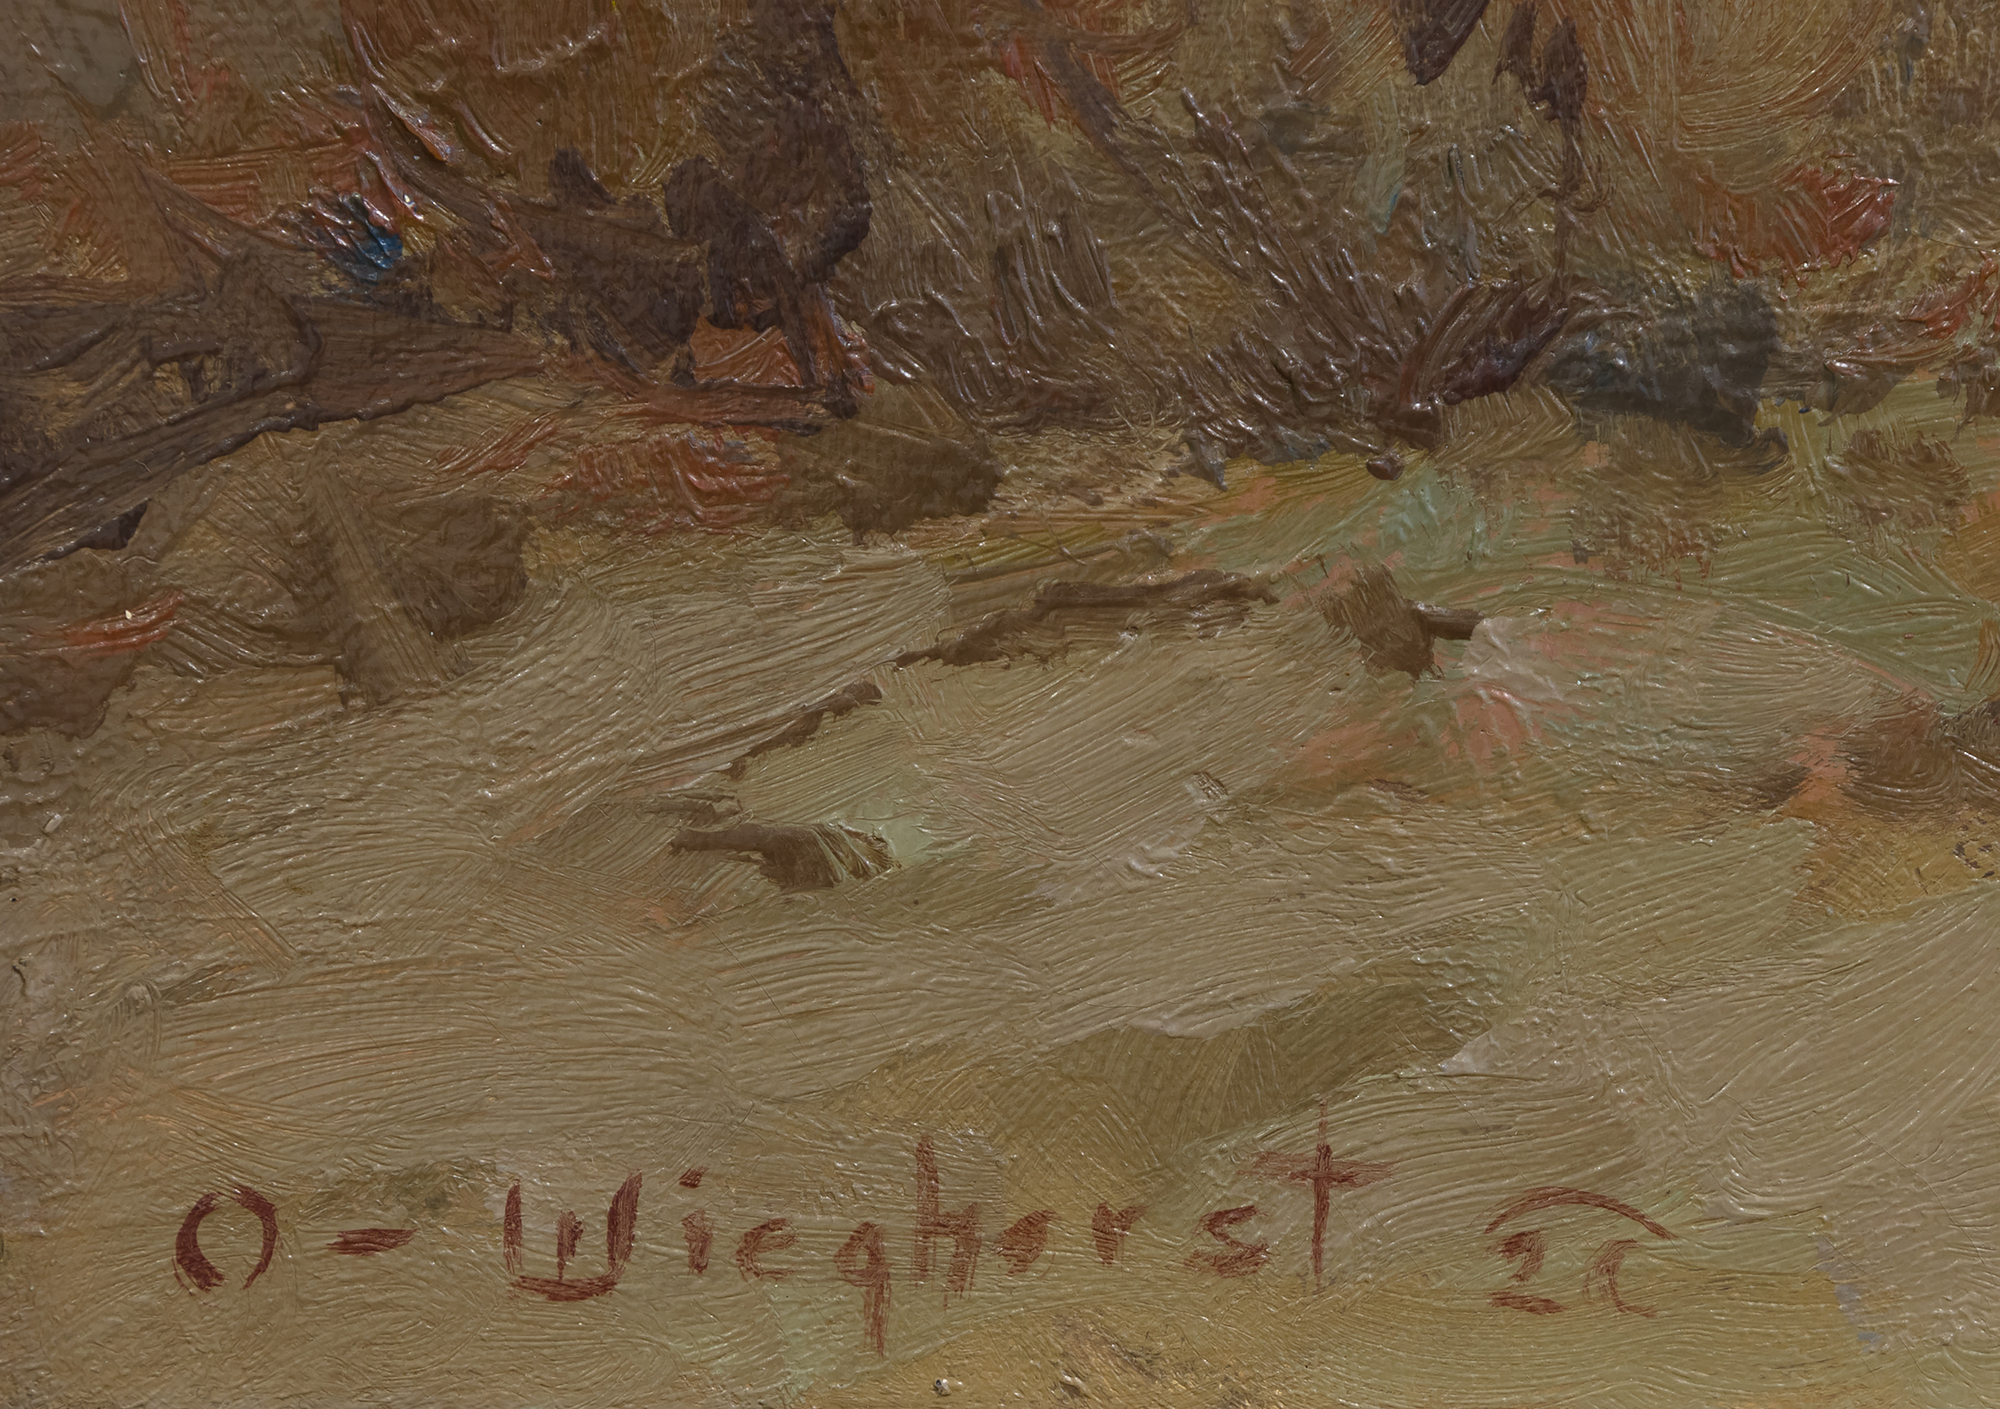 OLAF WIEGHORST - Apachen - Öl auf Leinwand - 20 x 24 Zoll.